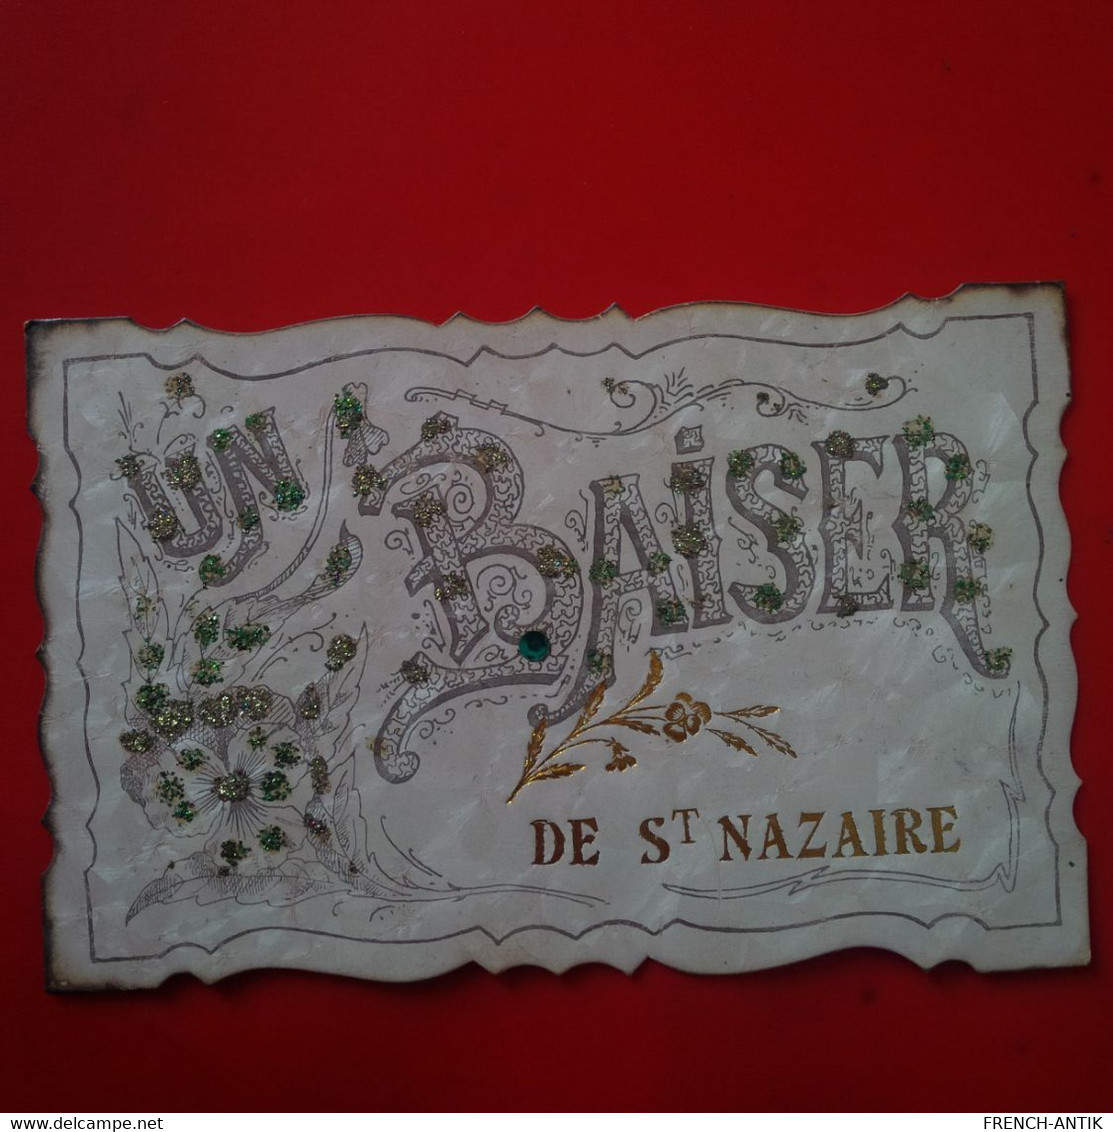 UN BAISER DE ST NAZAIRE - Saint Nazaire